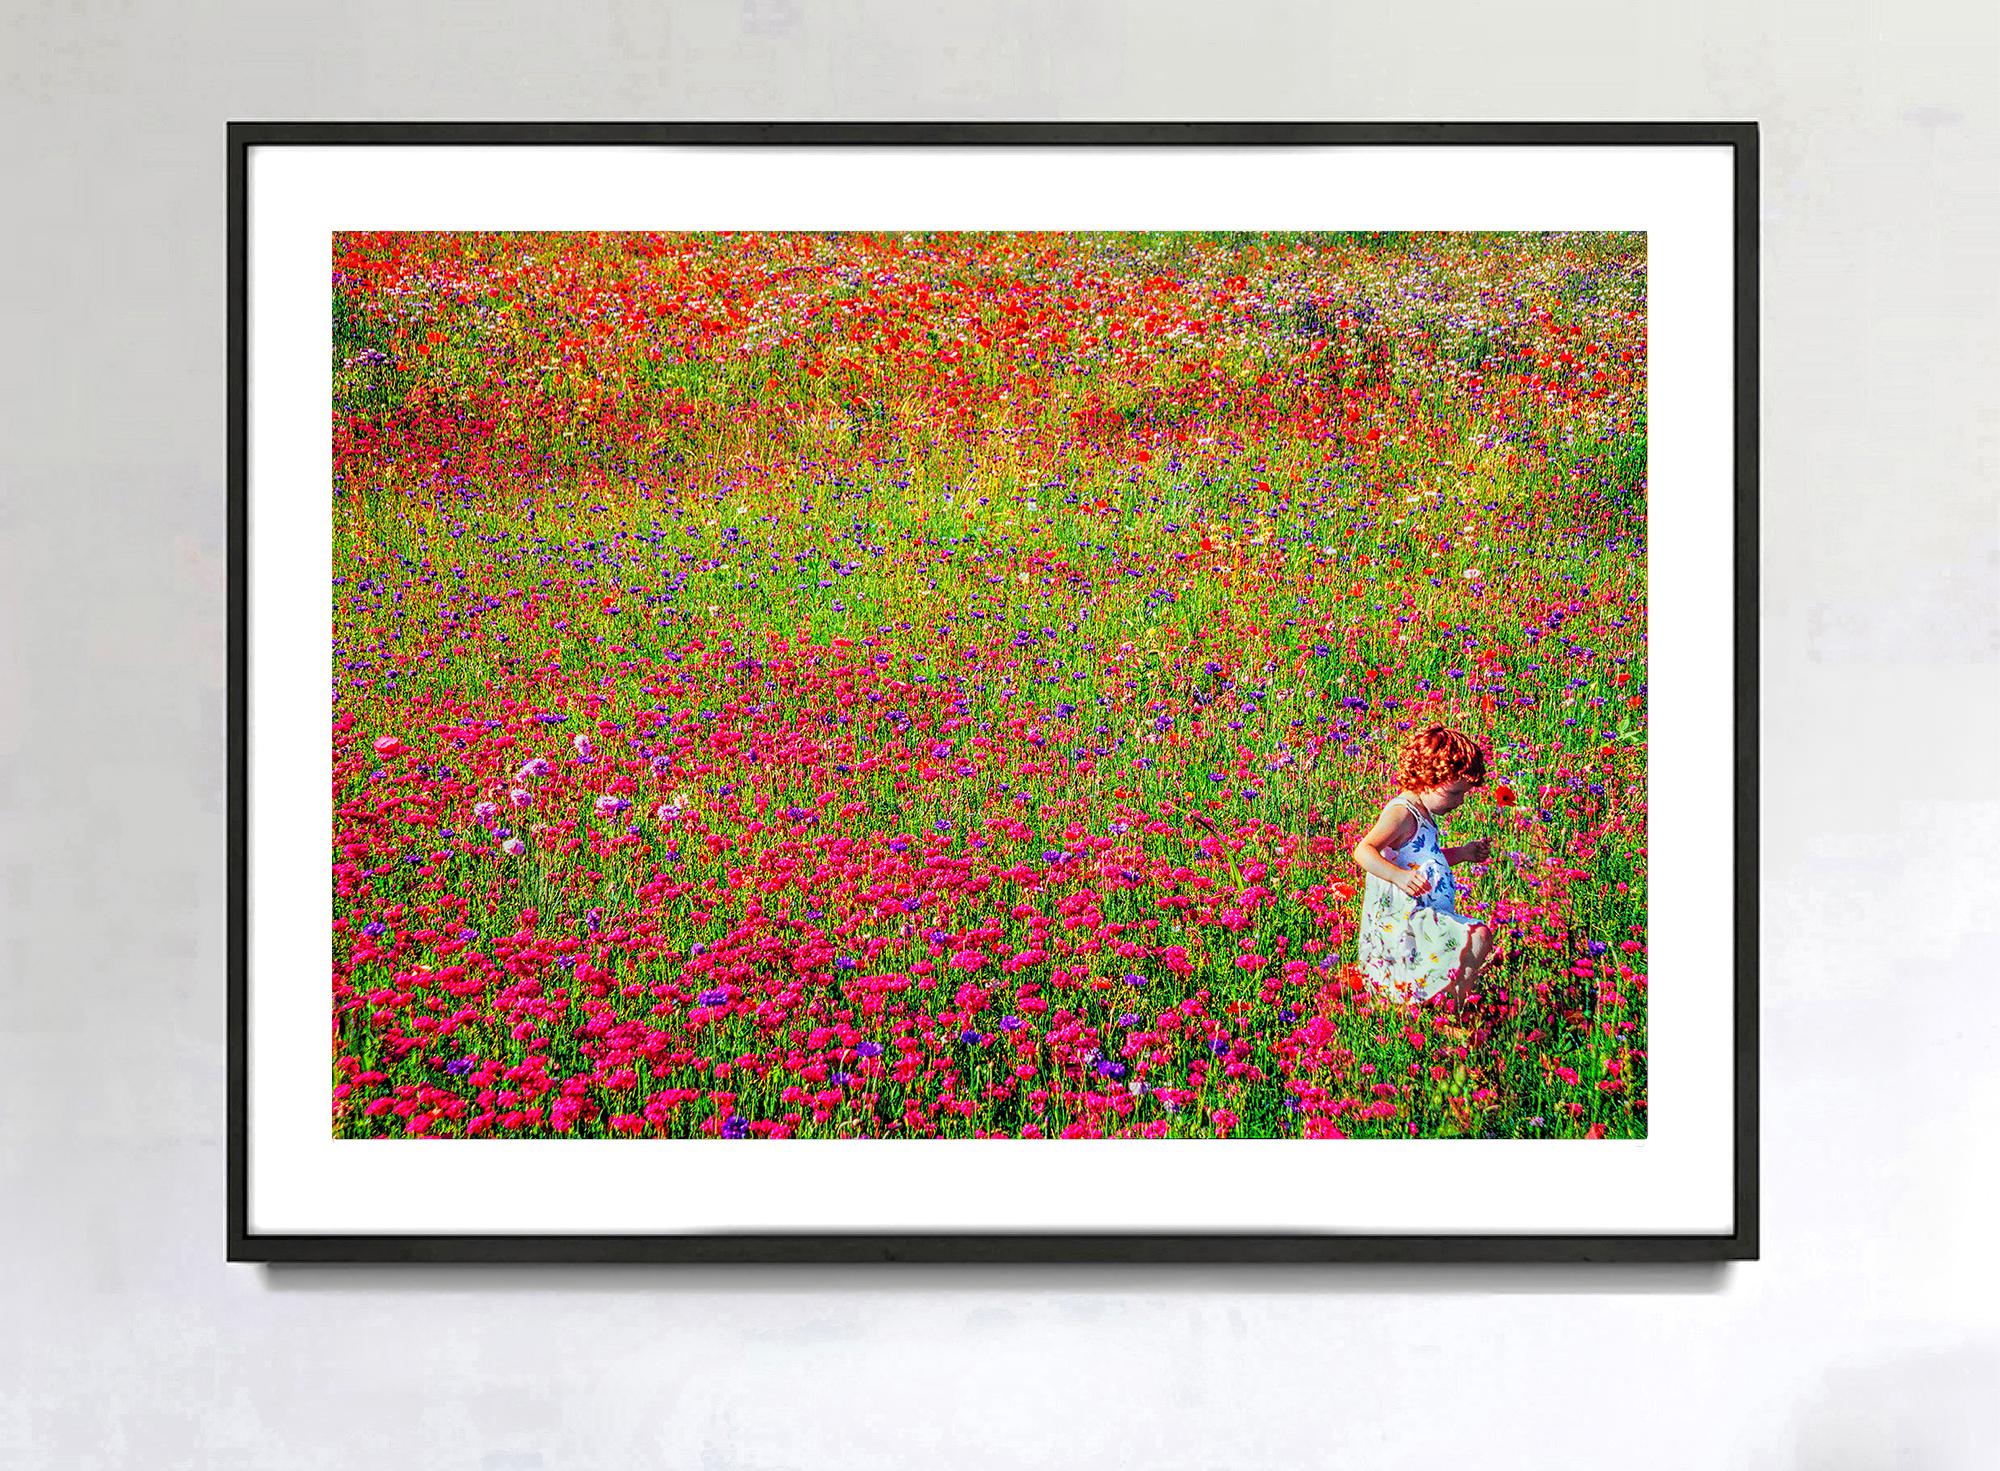 Buntes Blumenfeld mit Rotkopf-Kinder – East Hampton, wie Monet – Photograph von Mitchell Funk